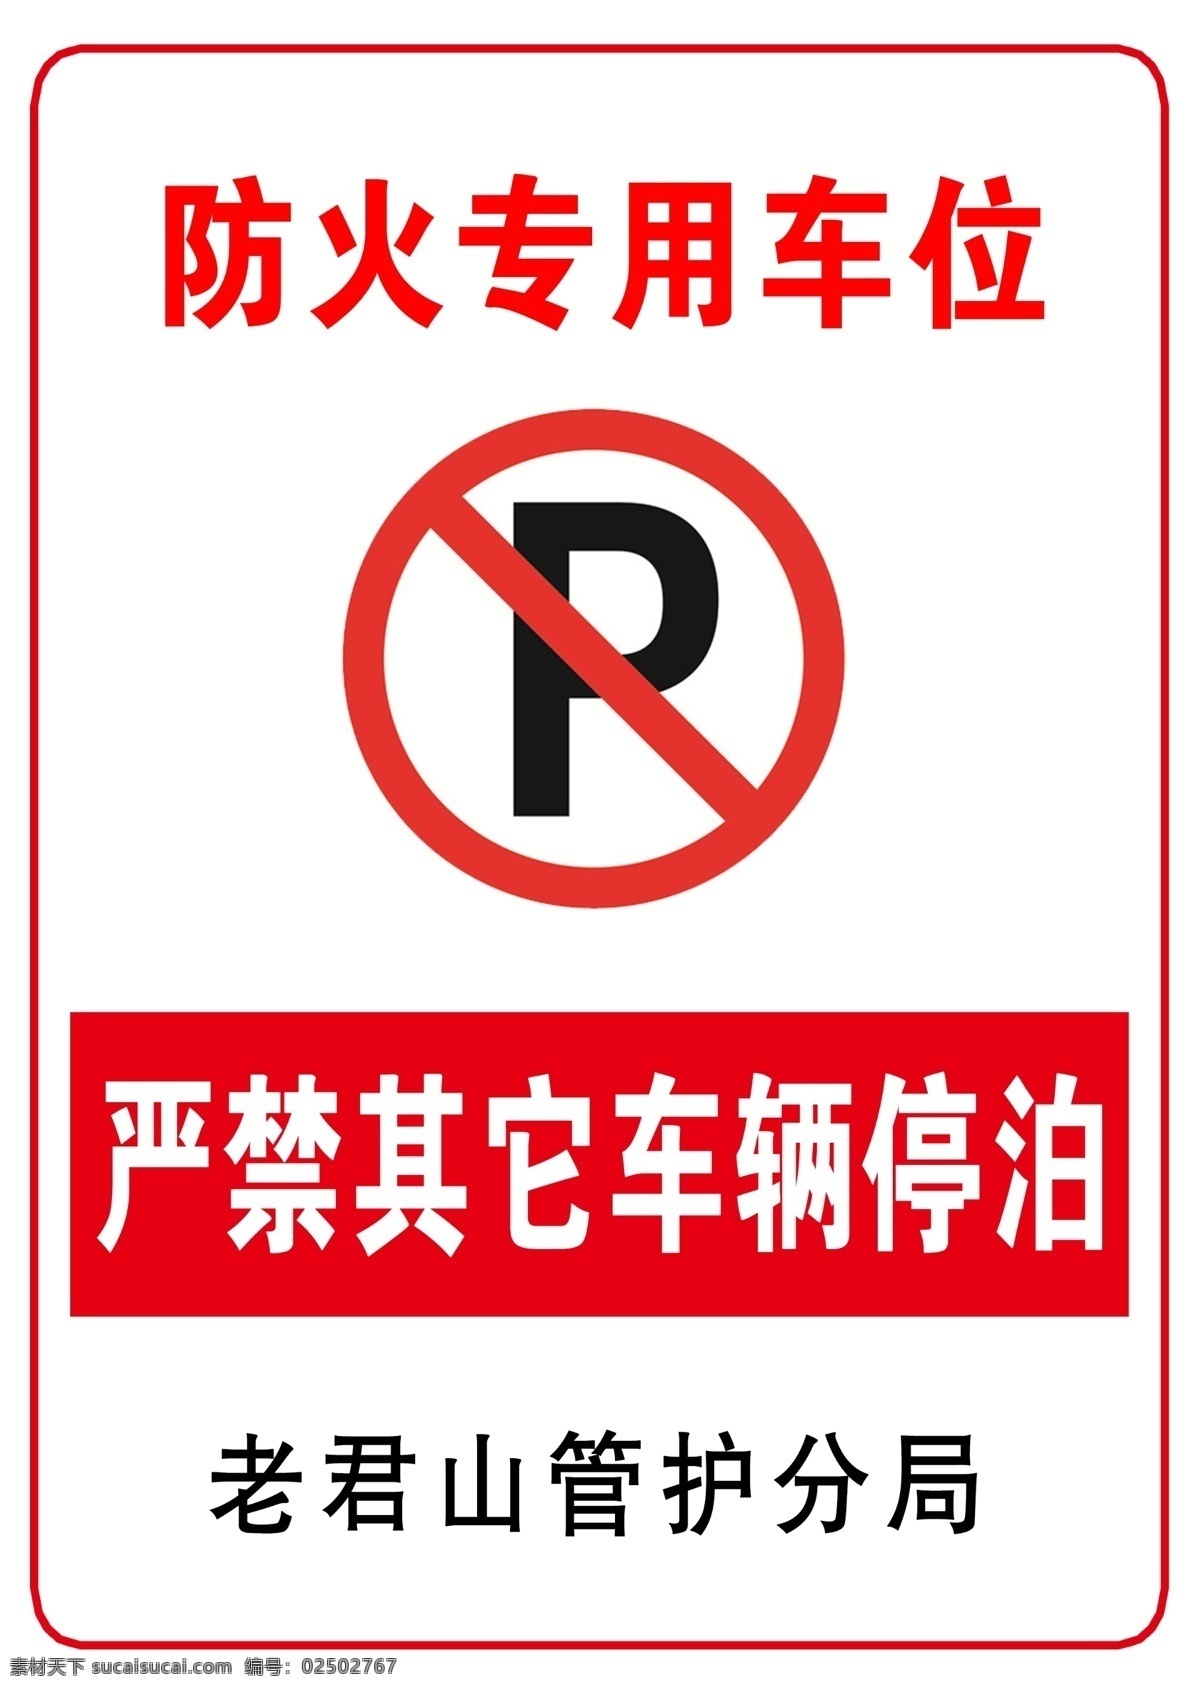 严禁停车 泊车牌 防火专用 停车标志 车位告示牌 专用车位 标志标识 商标设计